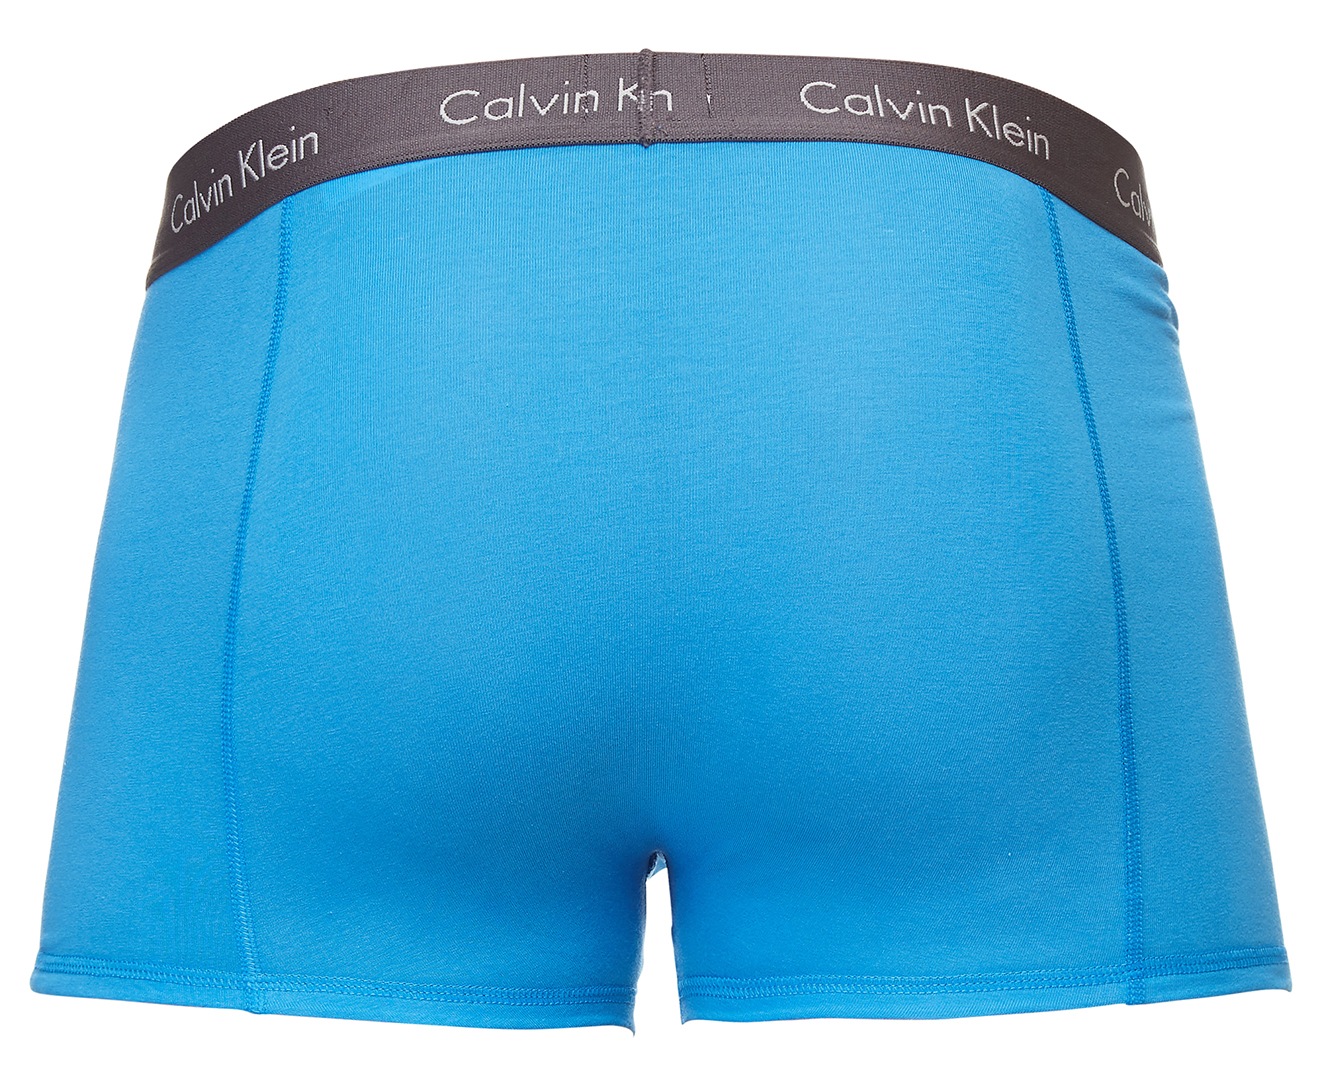 Calvin Klein Girls' Modern Cotton Bralette 3-Pack - Heather Grey/Navy/Light  Blue